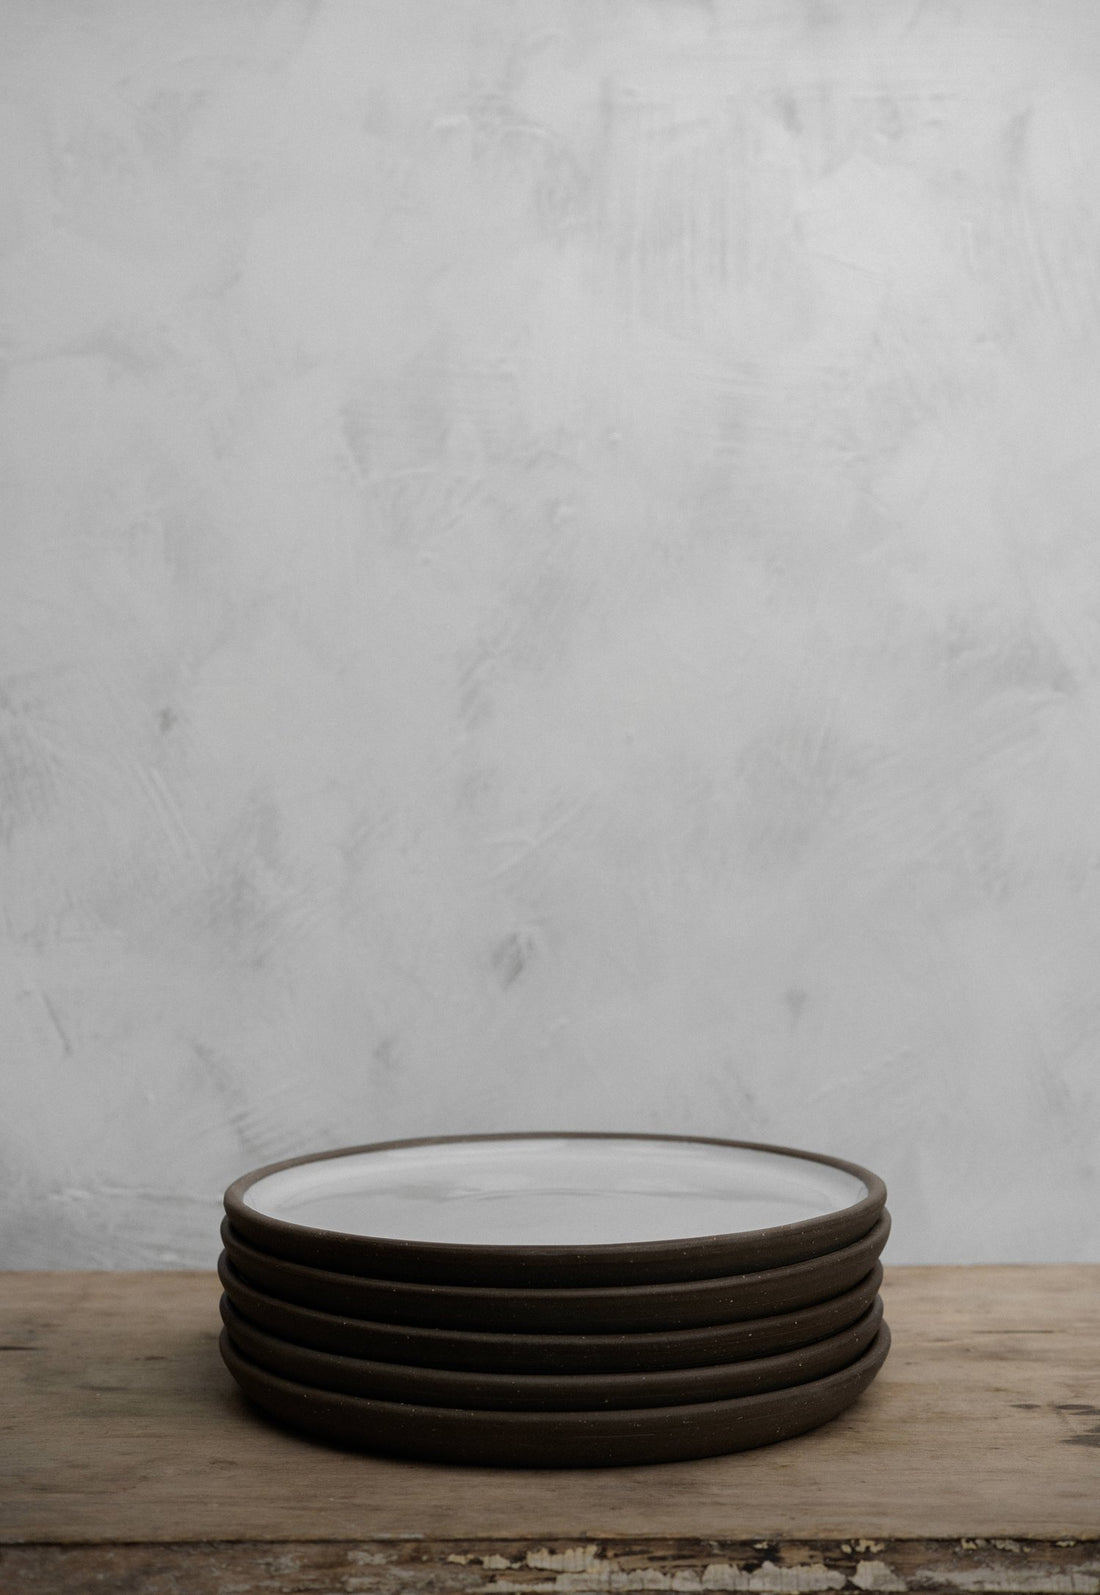 Large plate by Atelier Tréma